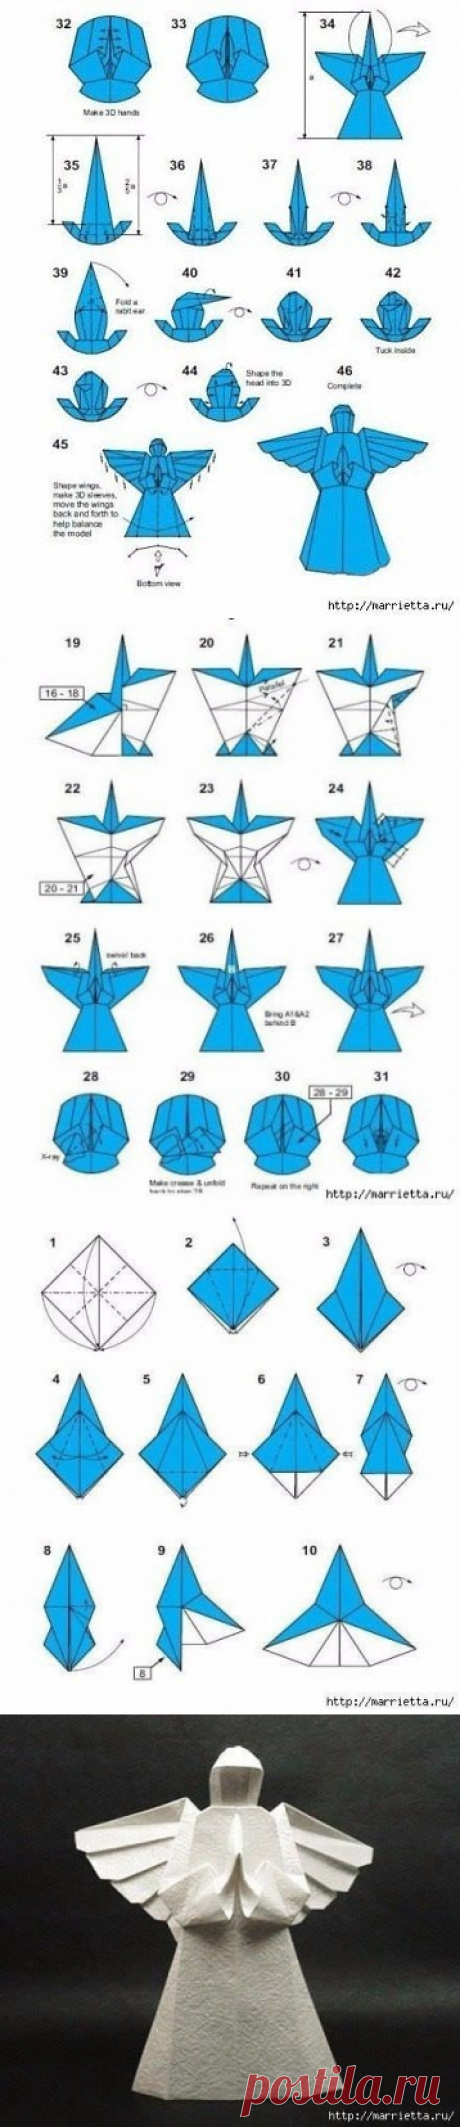 Ангел из бумаги в технике оригами